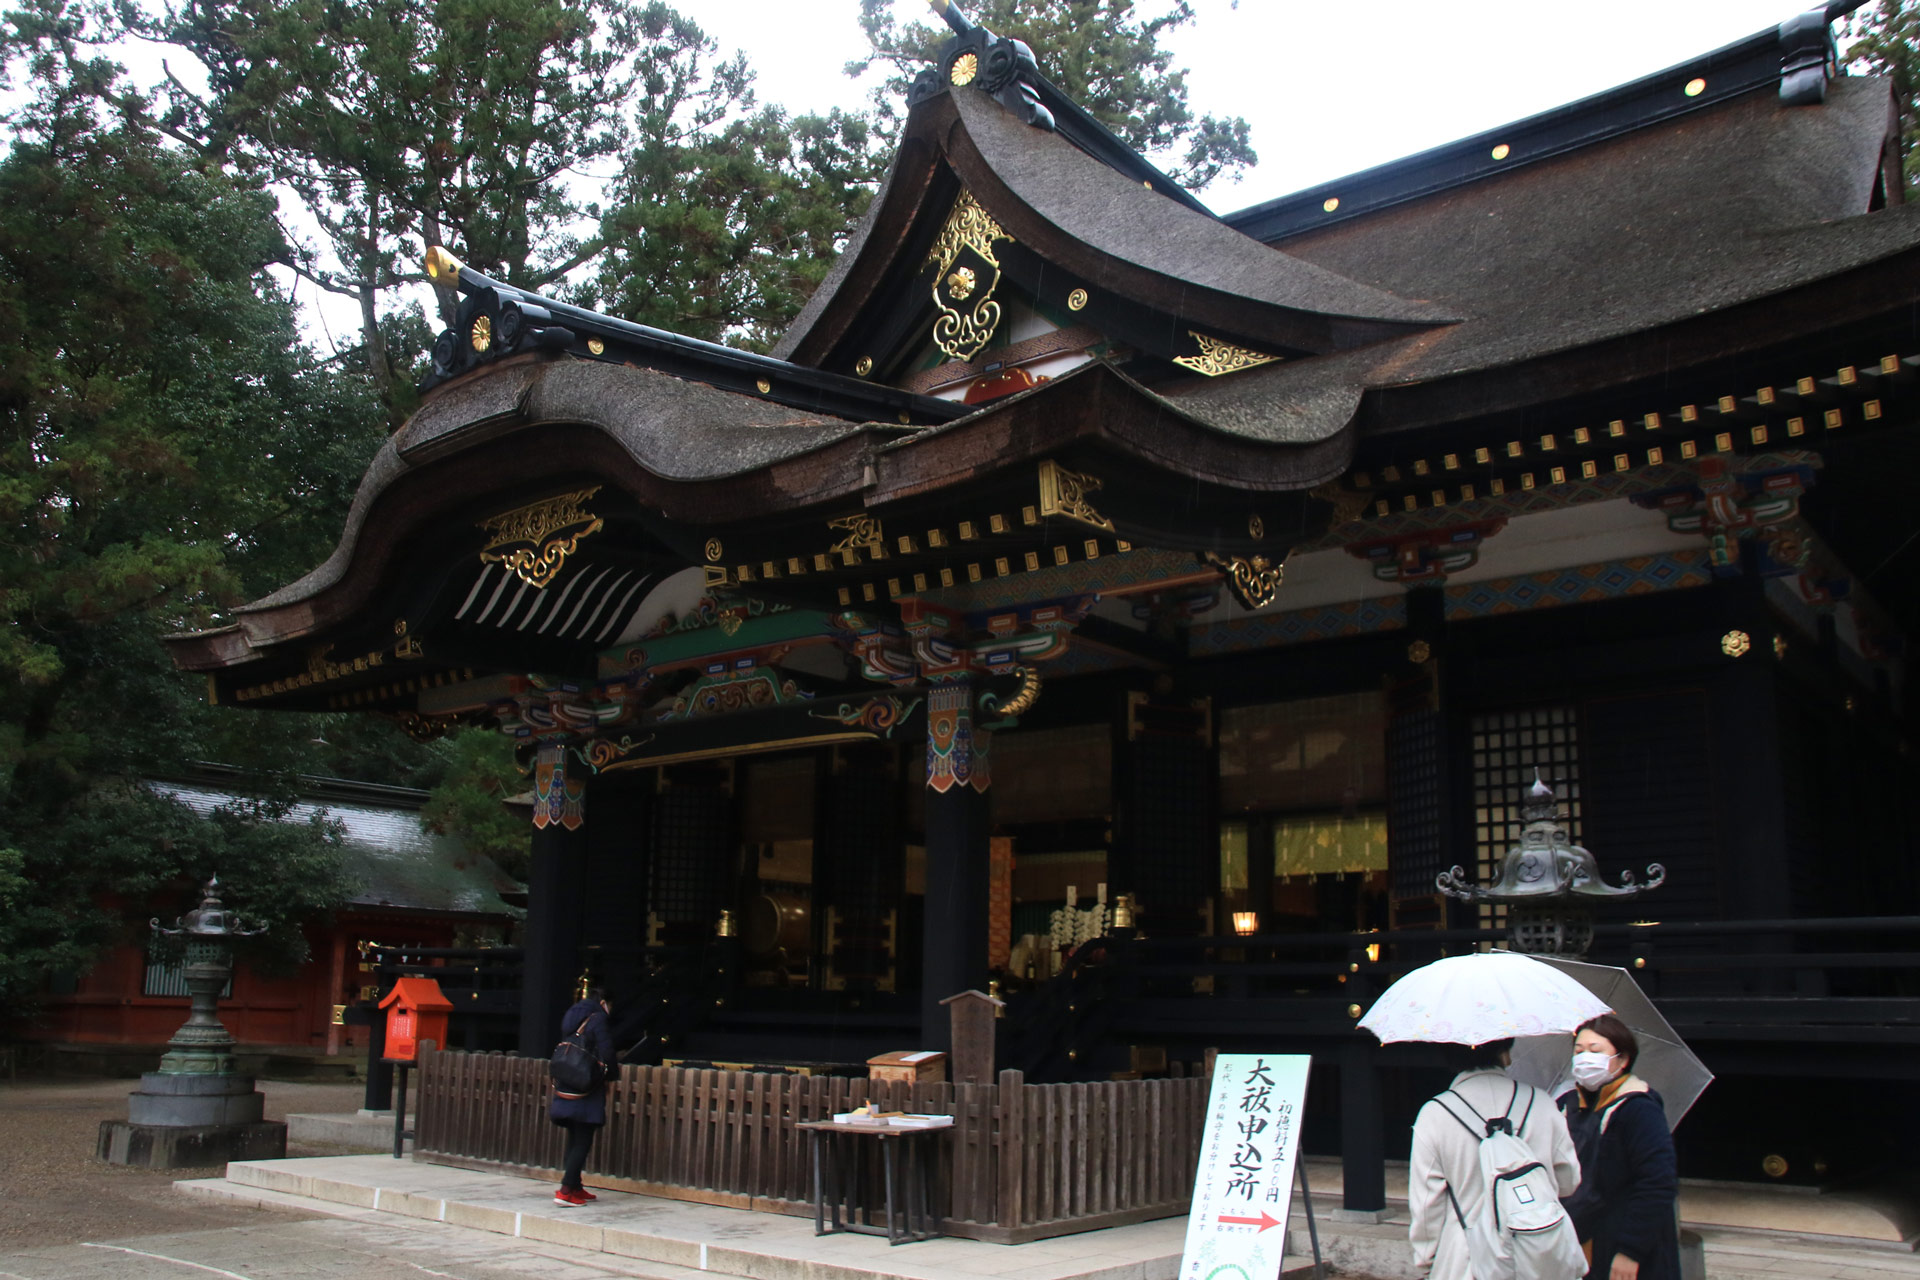 香取神宮の本殿拝殿は見事な黒塗りの建築です。